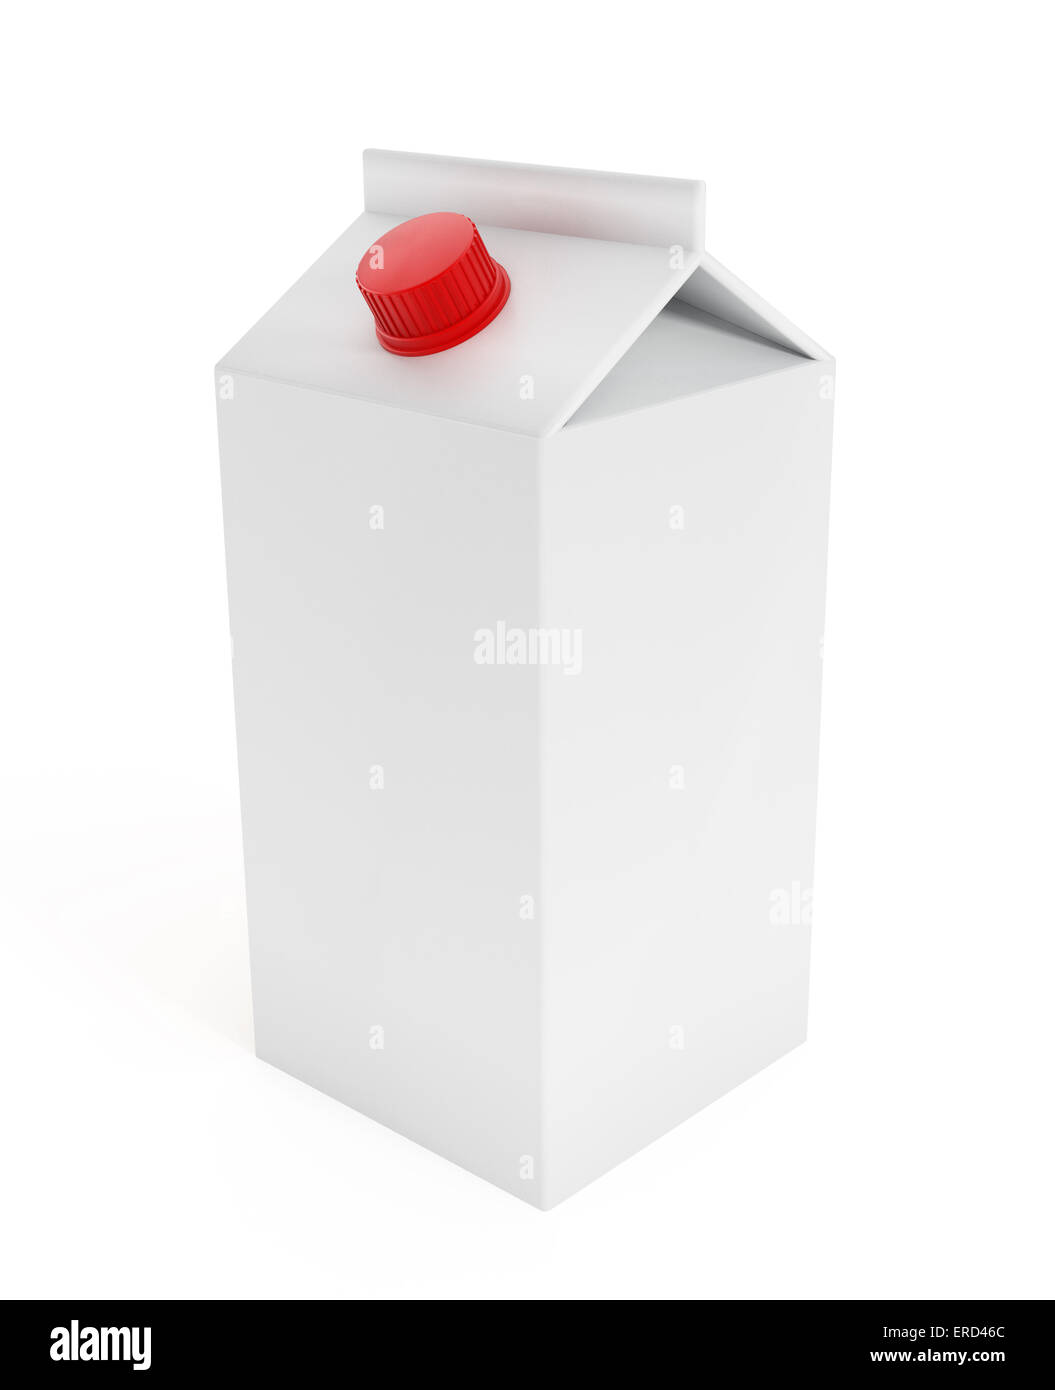 Blank juice box isolated on white. Stock Photo